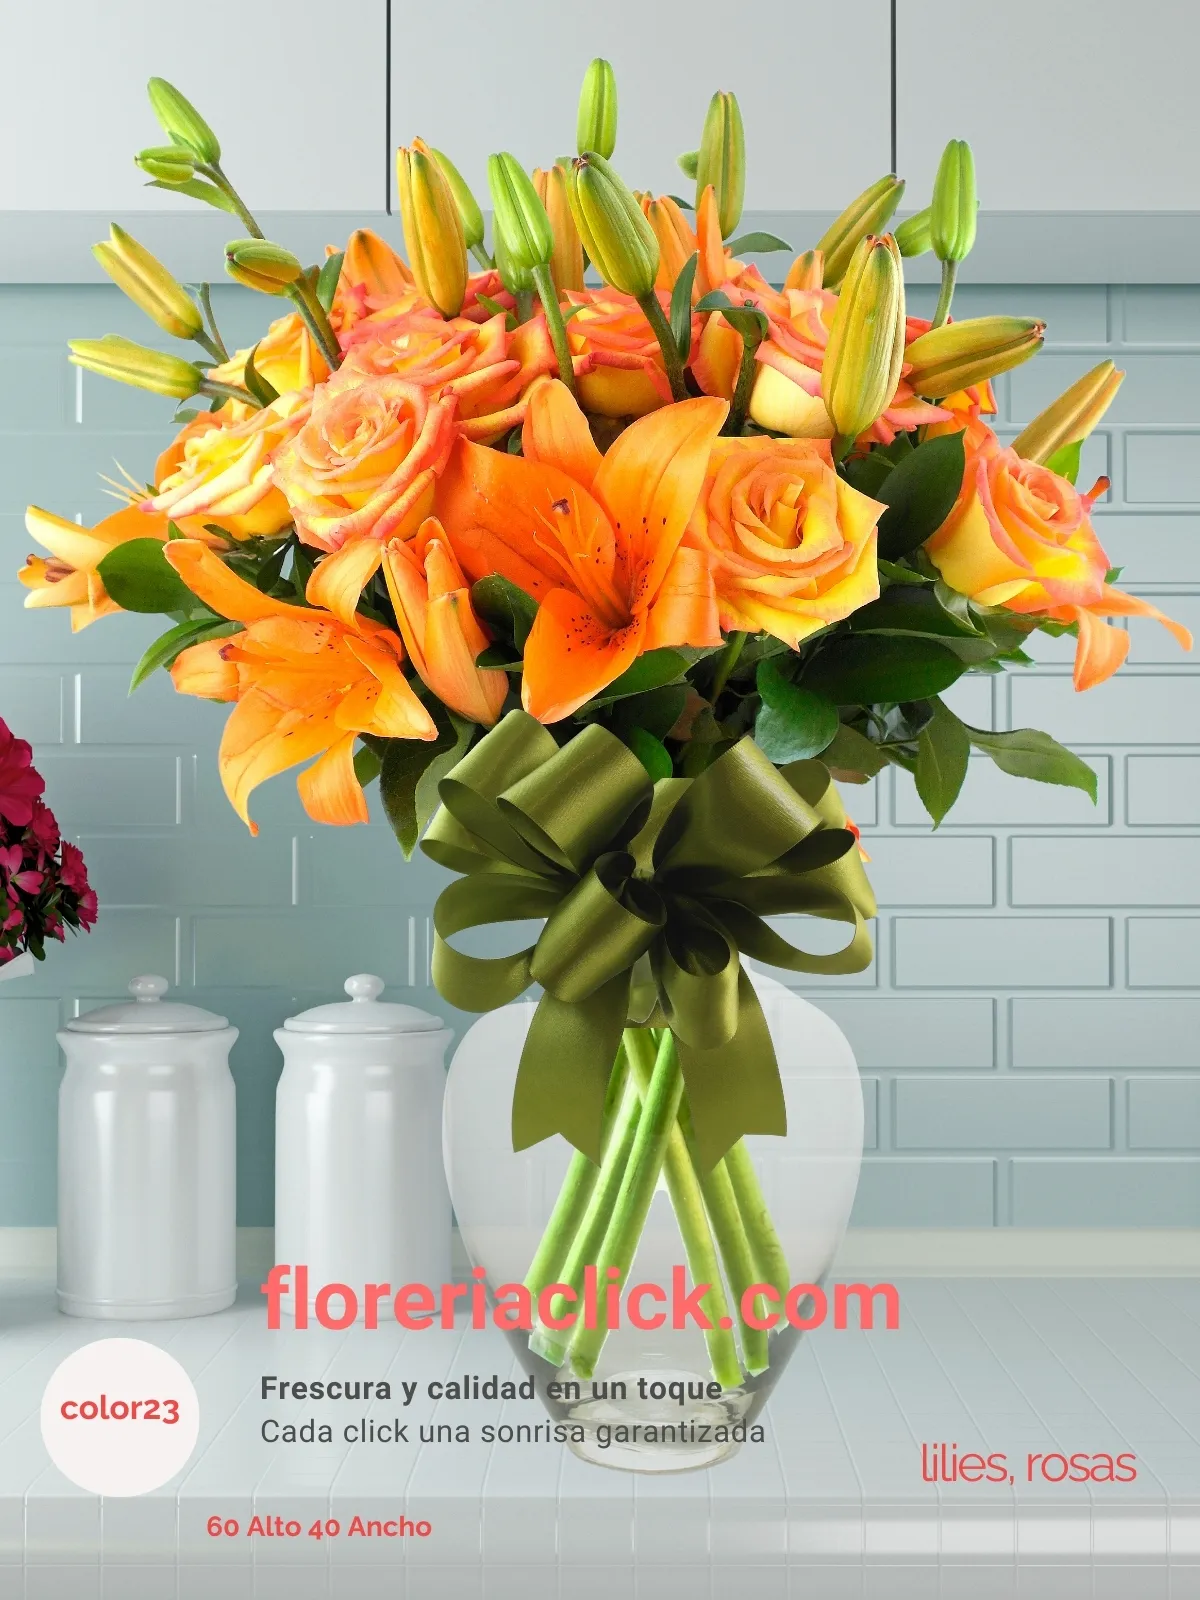 Arreglo floral cálido con lilies y rosas frescas